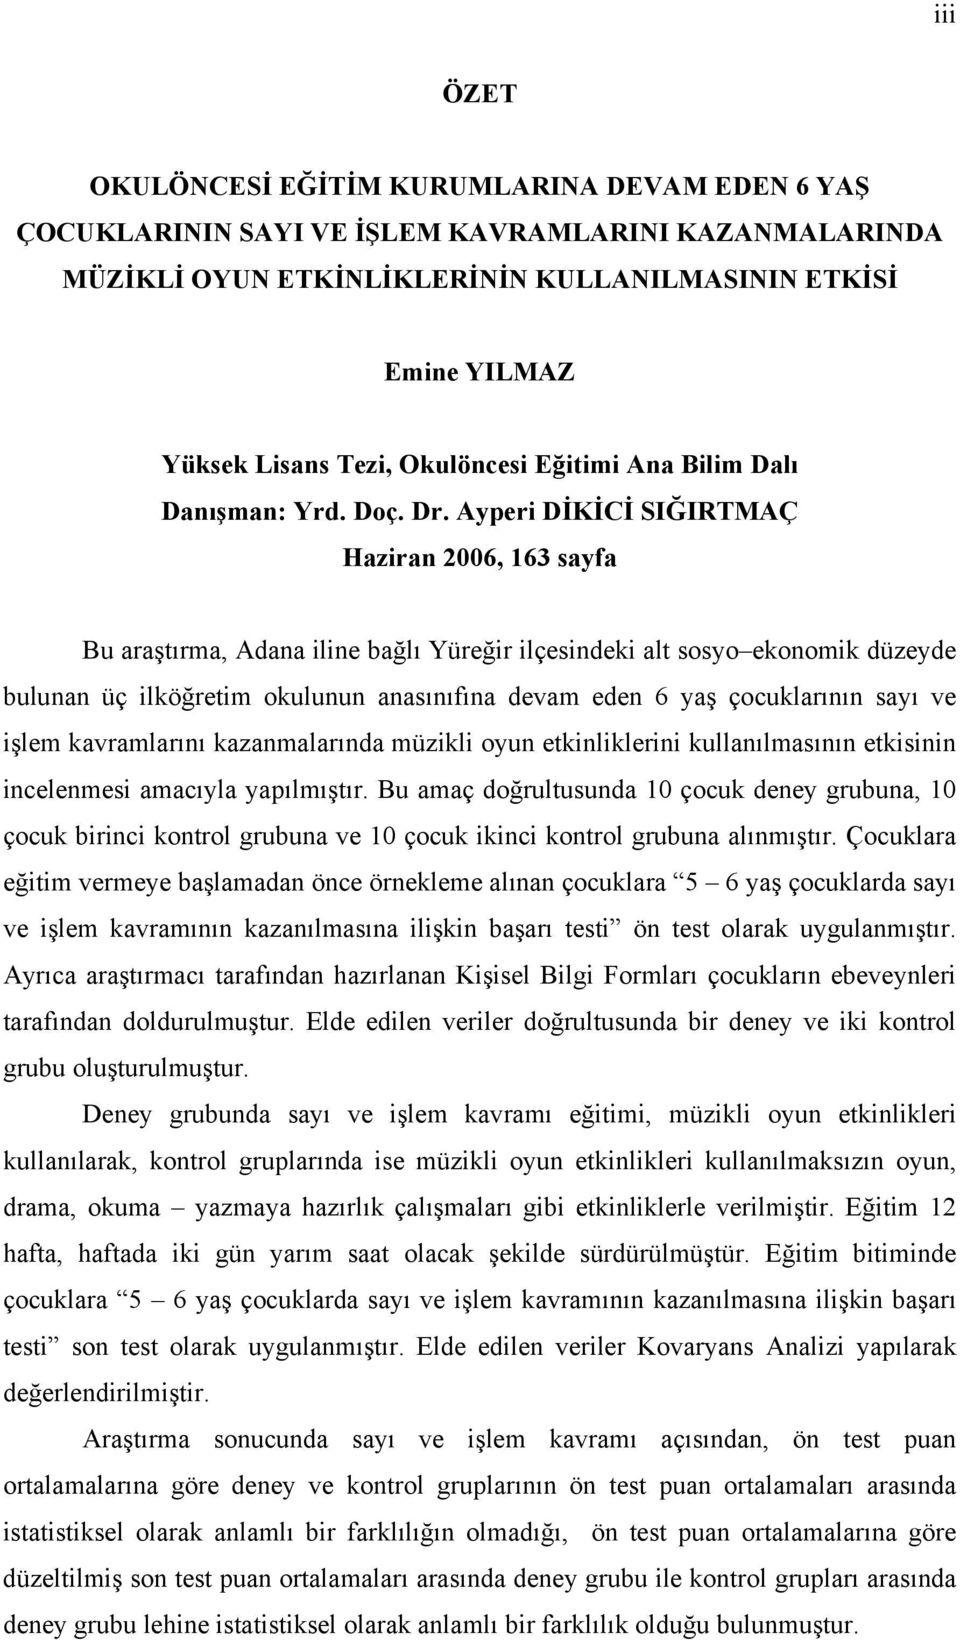 Ayperi DİKİCİ SIĞIRTMAÇ Haziran 2006, 163 sayfa Bu araştırma, Adana iline bağlı Yüreğir ilçesindeki alt sosyo ekonomik düzeyde bulunan üç ilköğretim okulunun anasınıfına devam eden 6 yaş çocuklarının